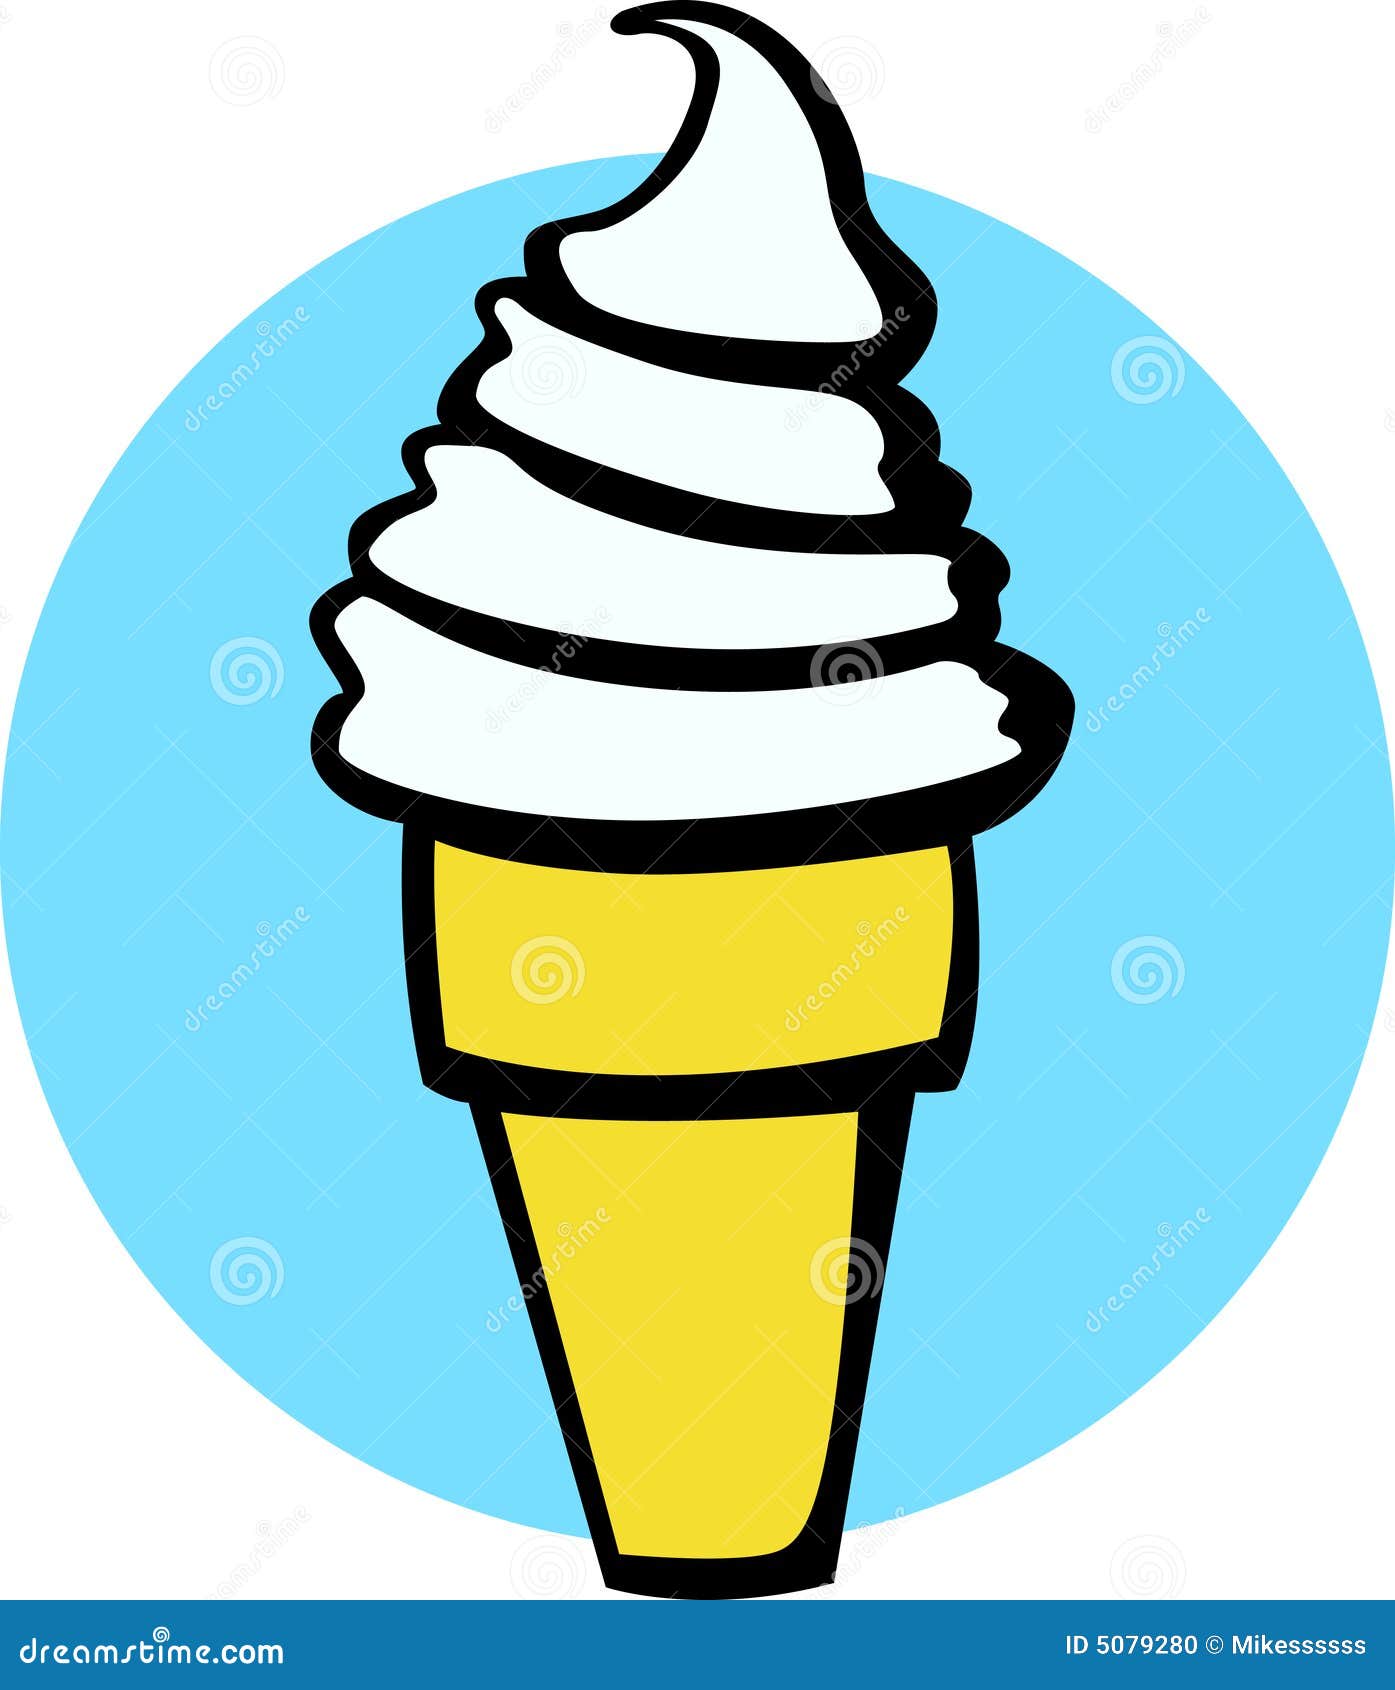 vanilla ice cream cone clipart - photo #8